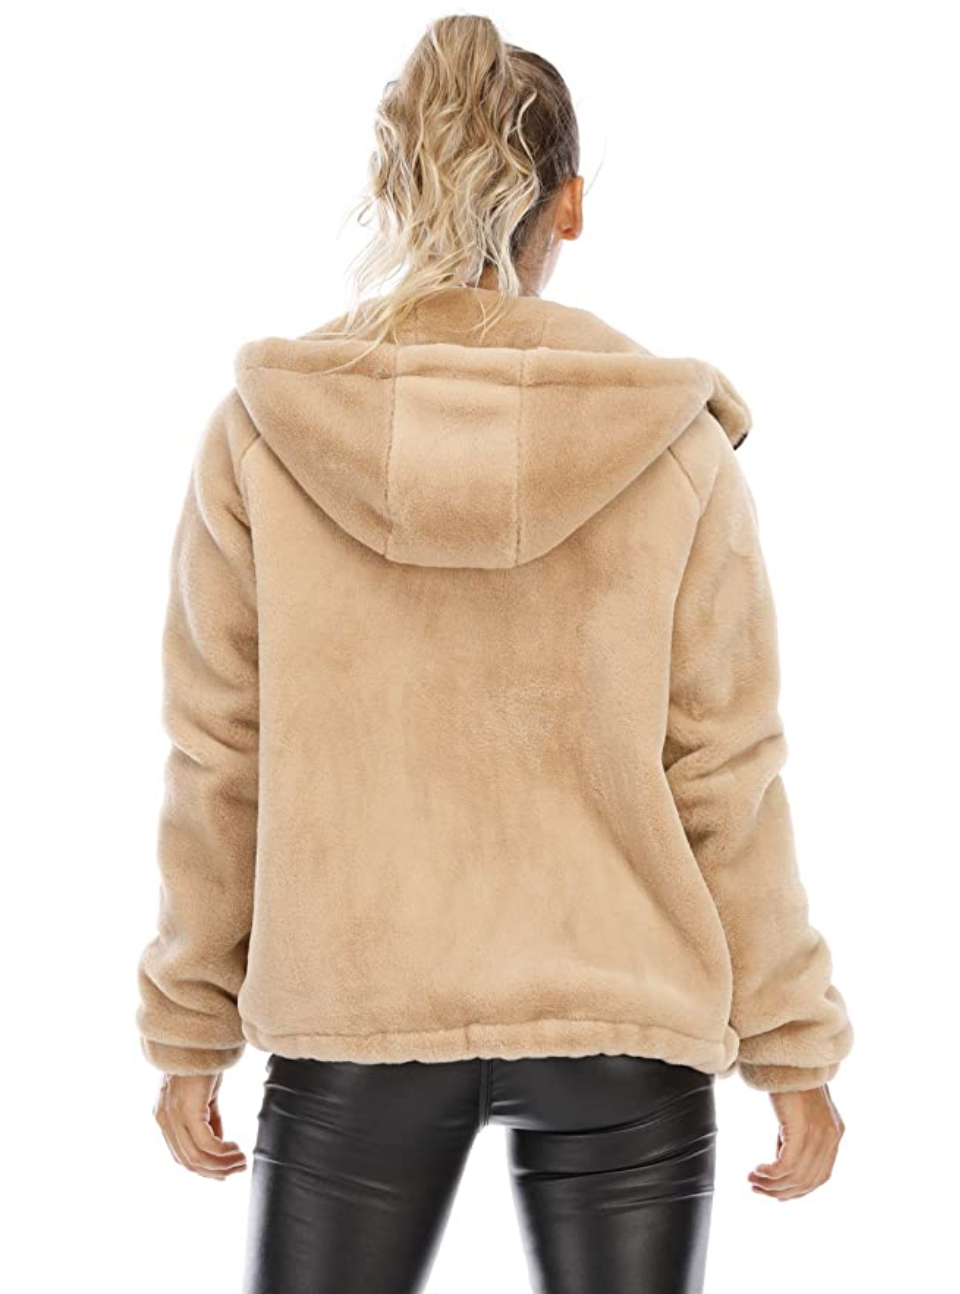 kooosin Women’s Faux Fur Coat with Pockets